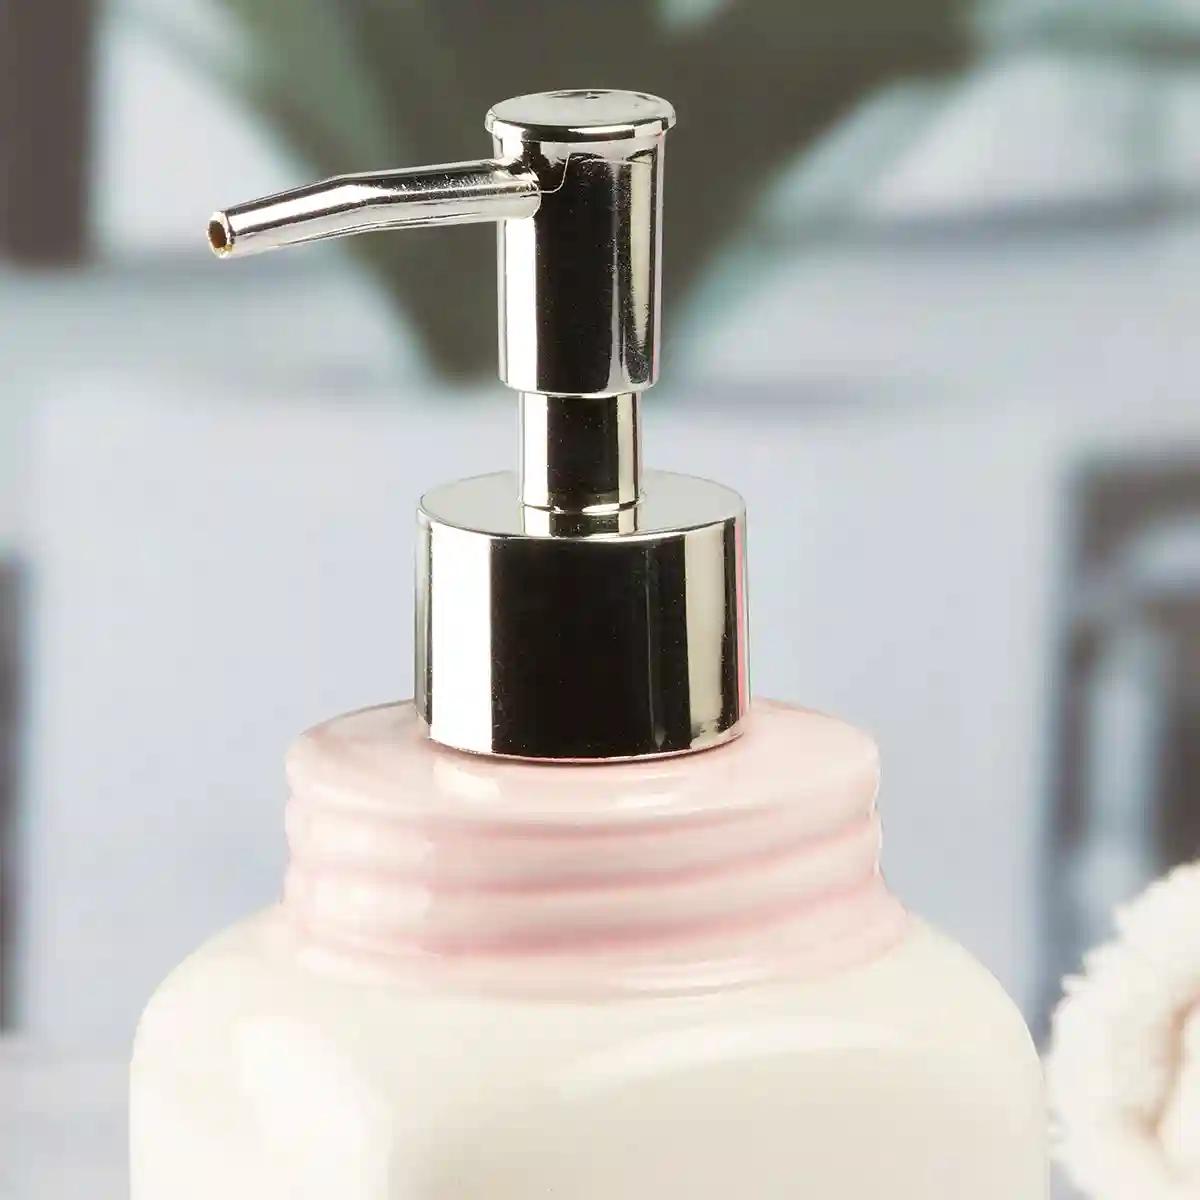 Kookee Ceramic Soap Dispenser for Bathroom handwash, refillable pump bottle for Kitchen hand wash basin, Set of 2 - Off-White (9652)